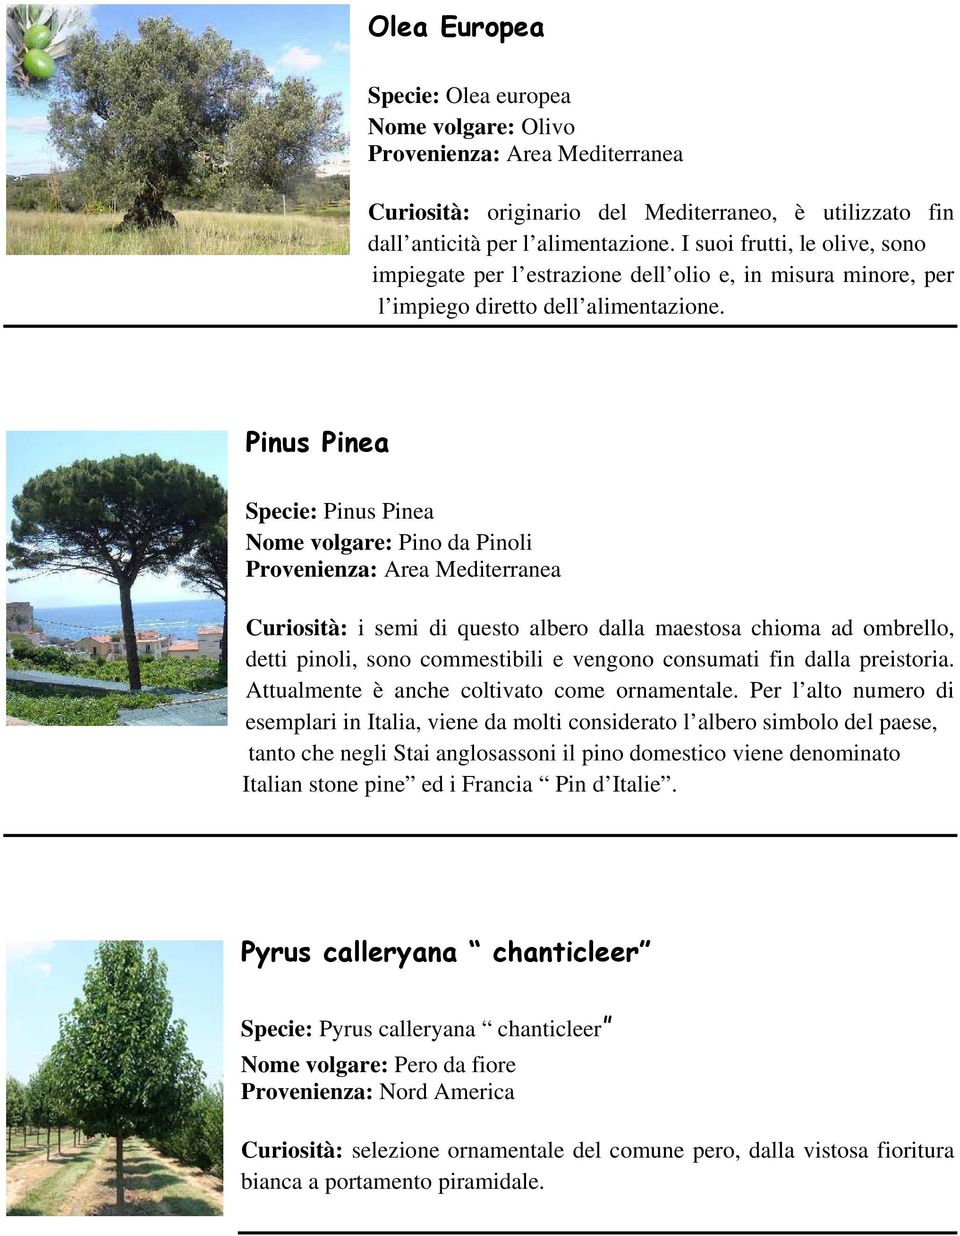 Pinus Pinea Specie: Pinus Pinea Nome volgare: Pino da Pinoli Curiosità: i semi di questo albero dalla maestosa chioma ad ombrello, detti pinoli, sono commestibili e vengono consumati fin dalla